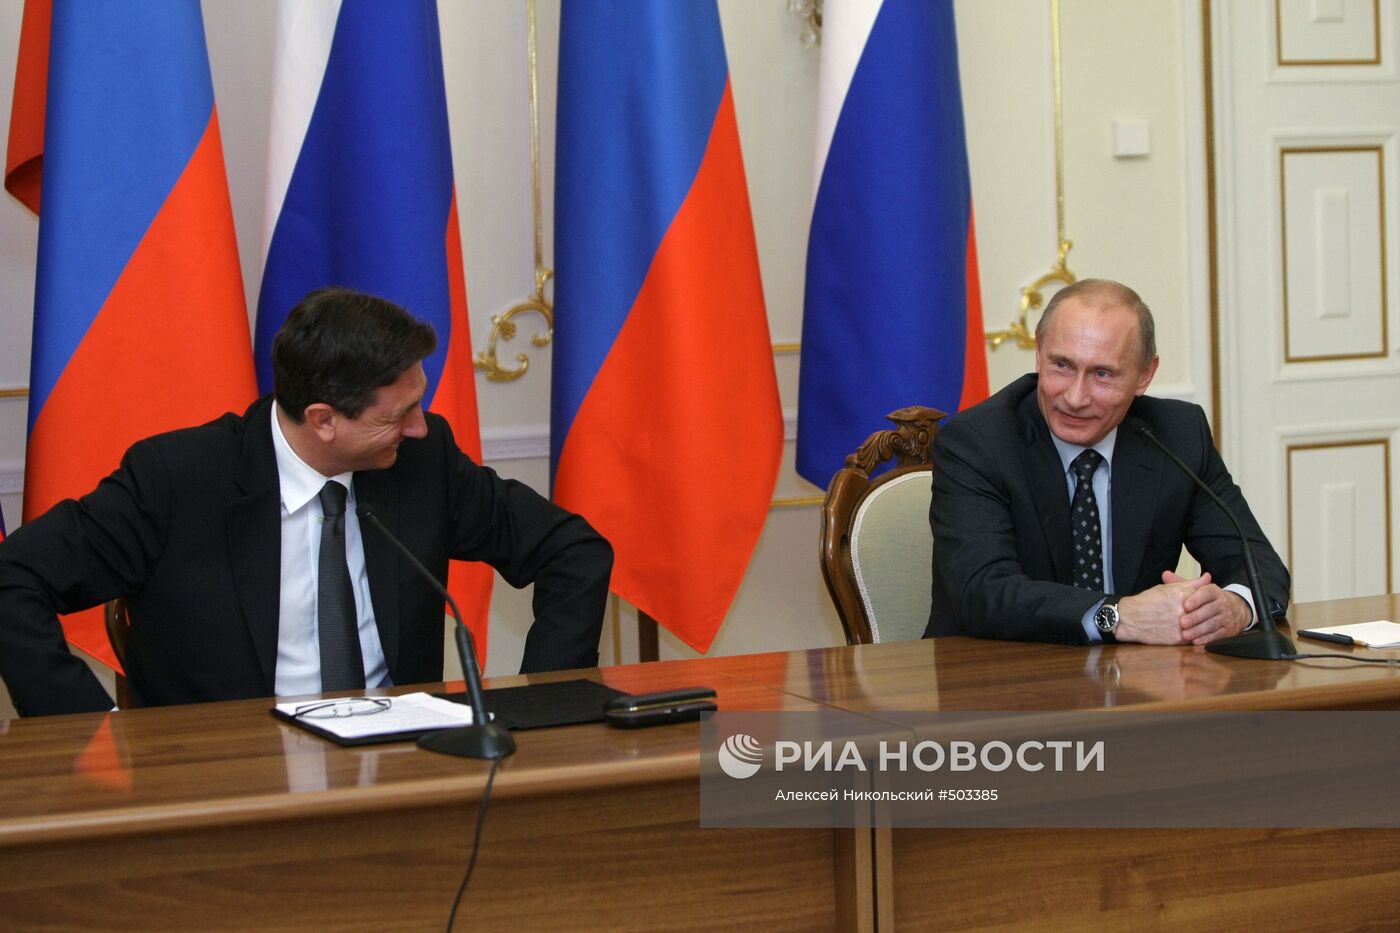 Совместная пресс-конференция глав правительств РФ и Словении